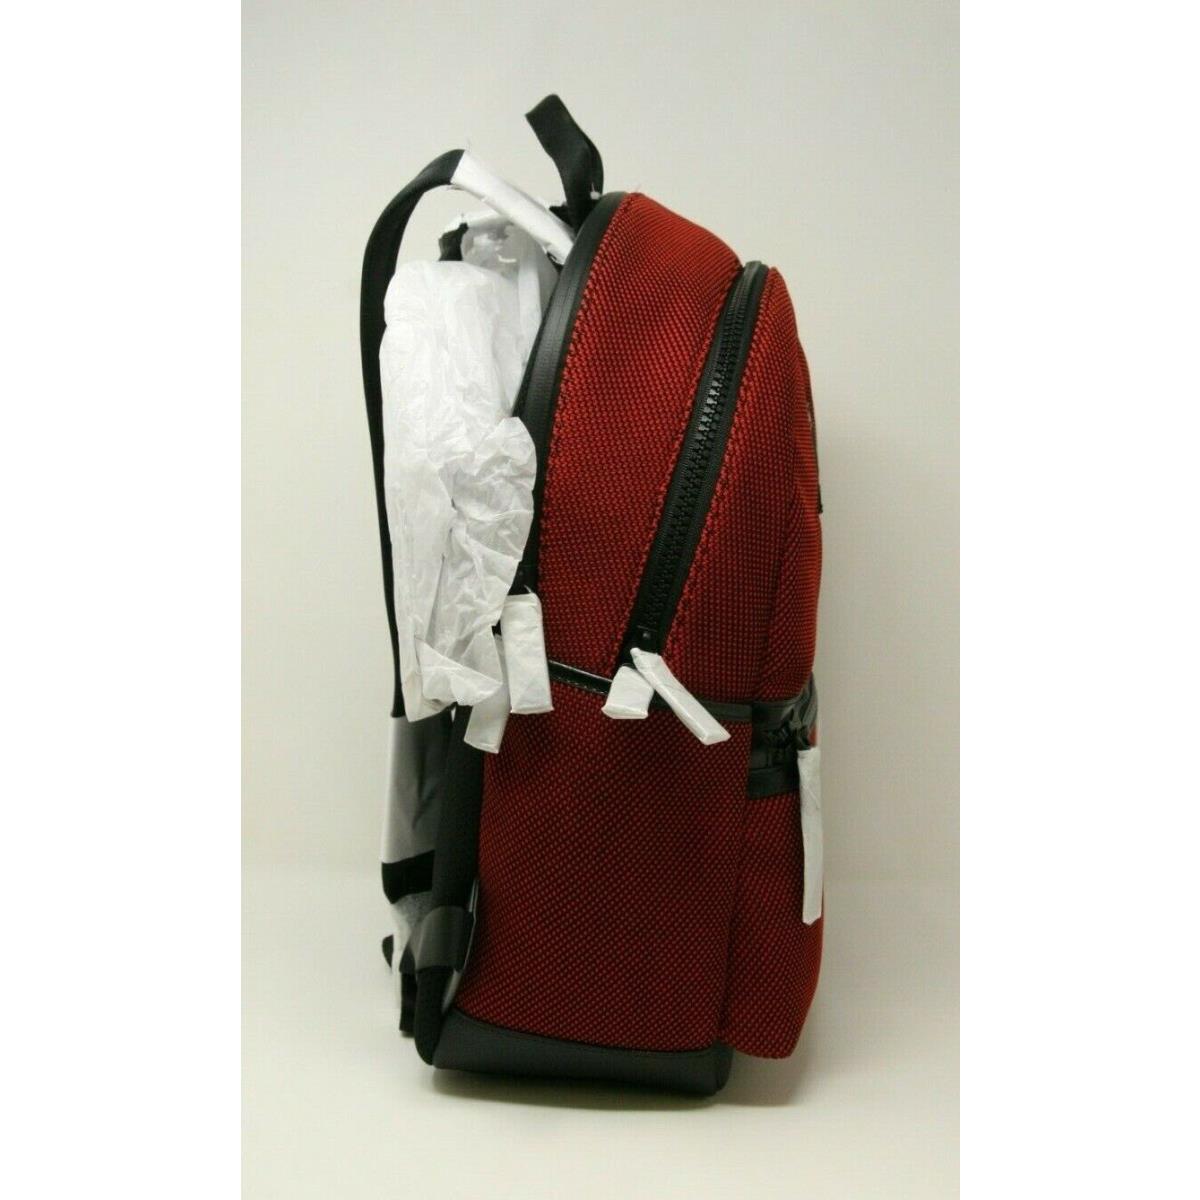 Michael Kors  bag   - Red , Black 0